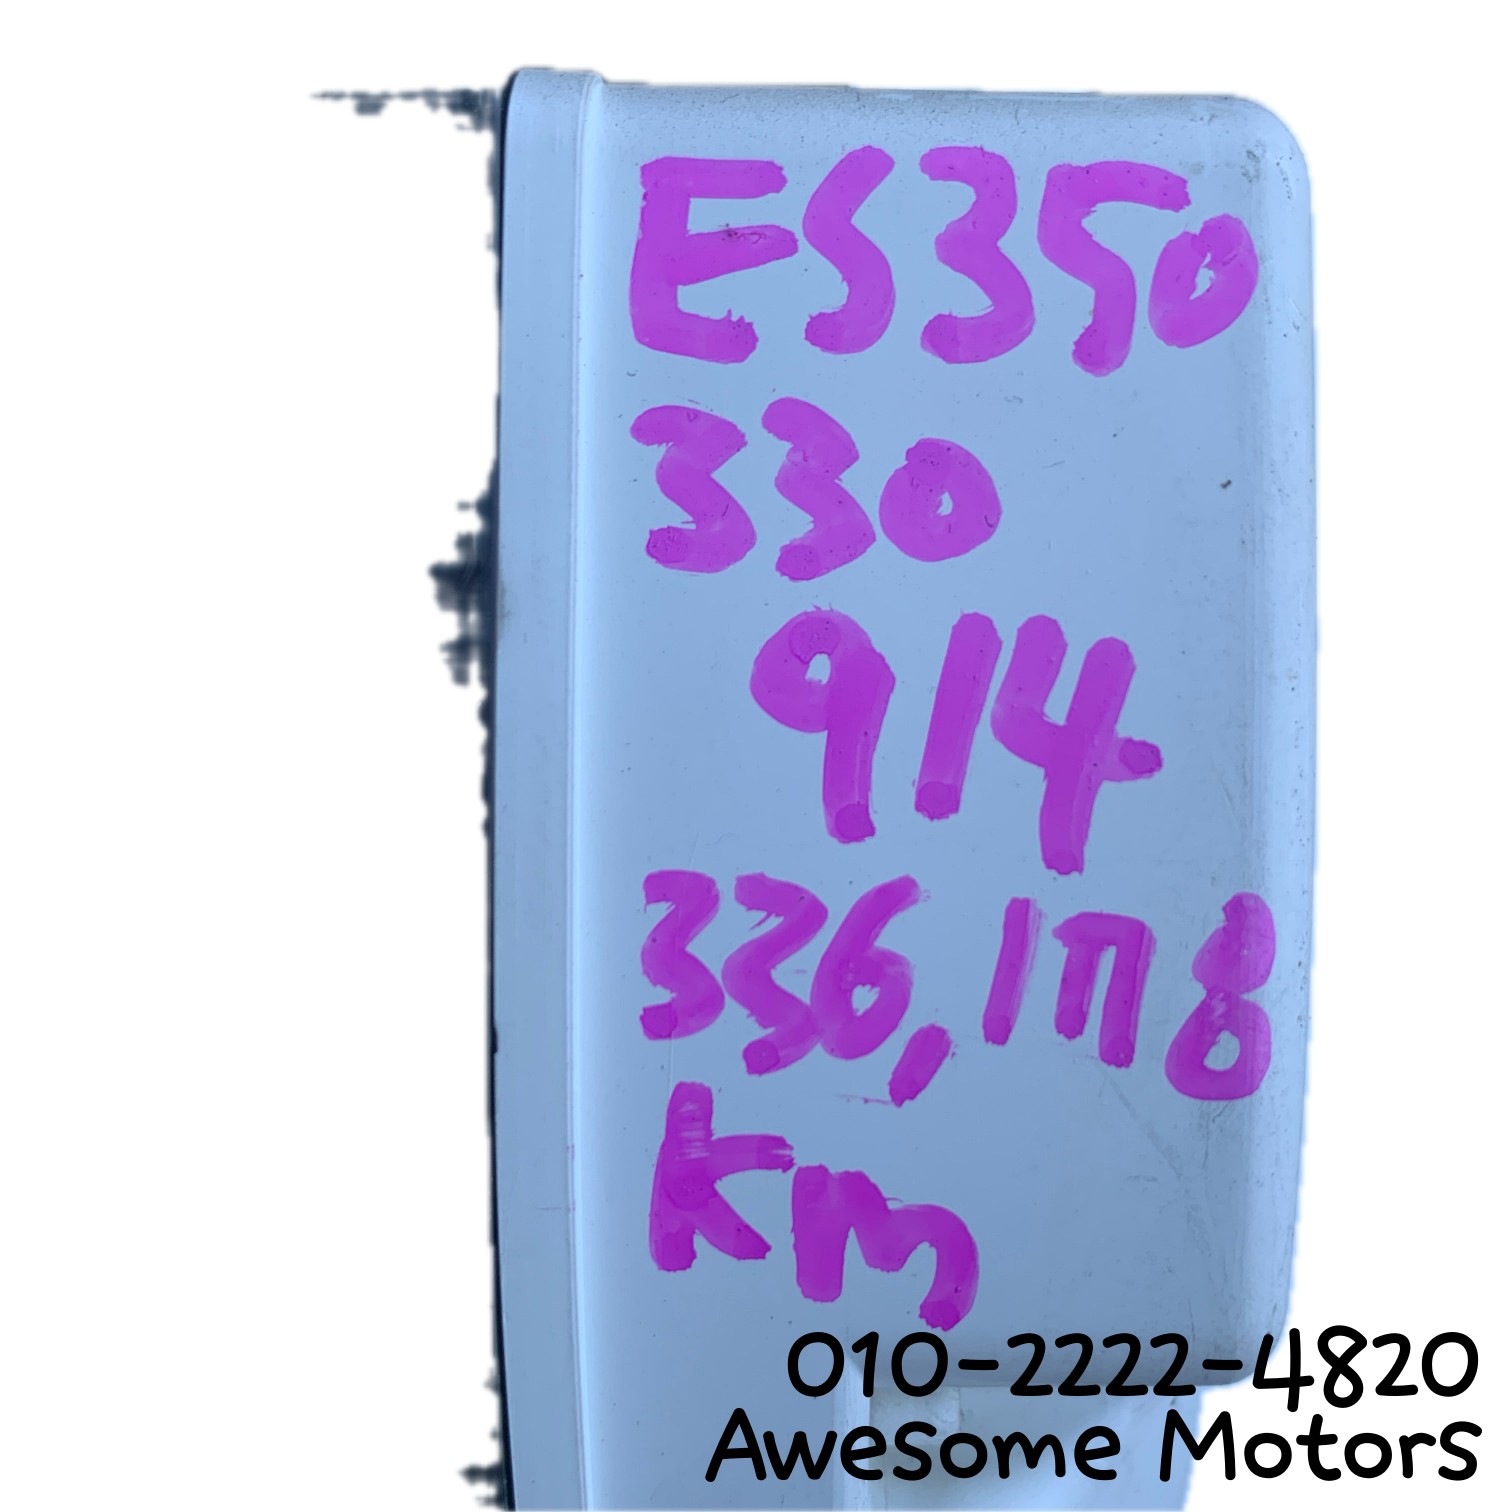 렉서스 ES350 5세대 전기형 계기판 8380033B92 336,178KM